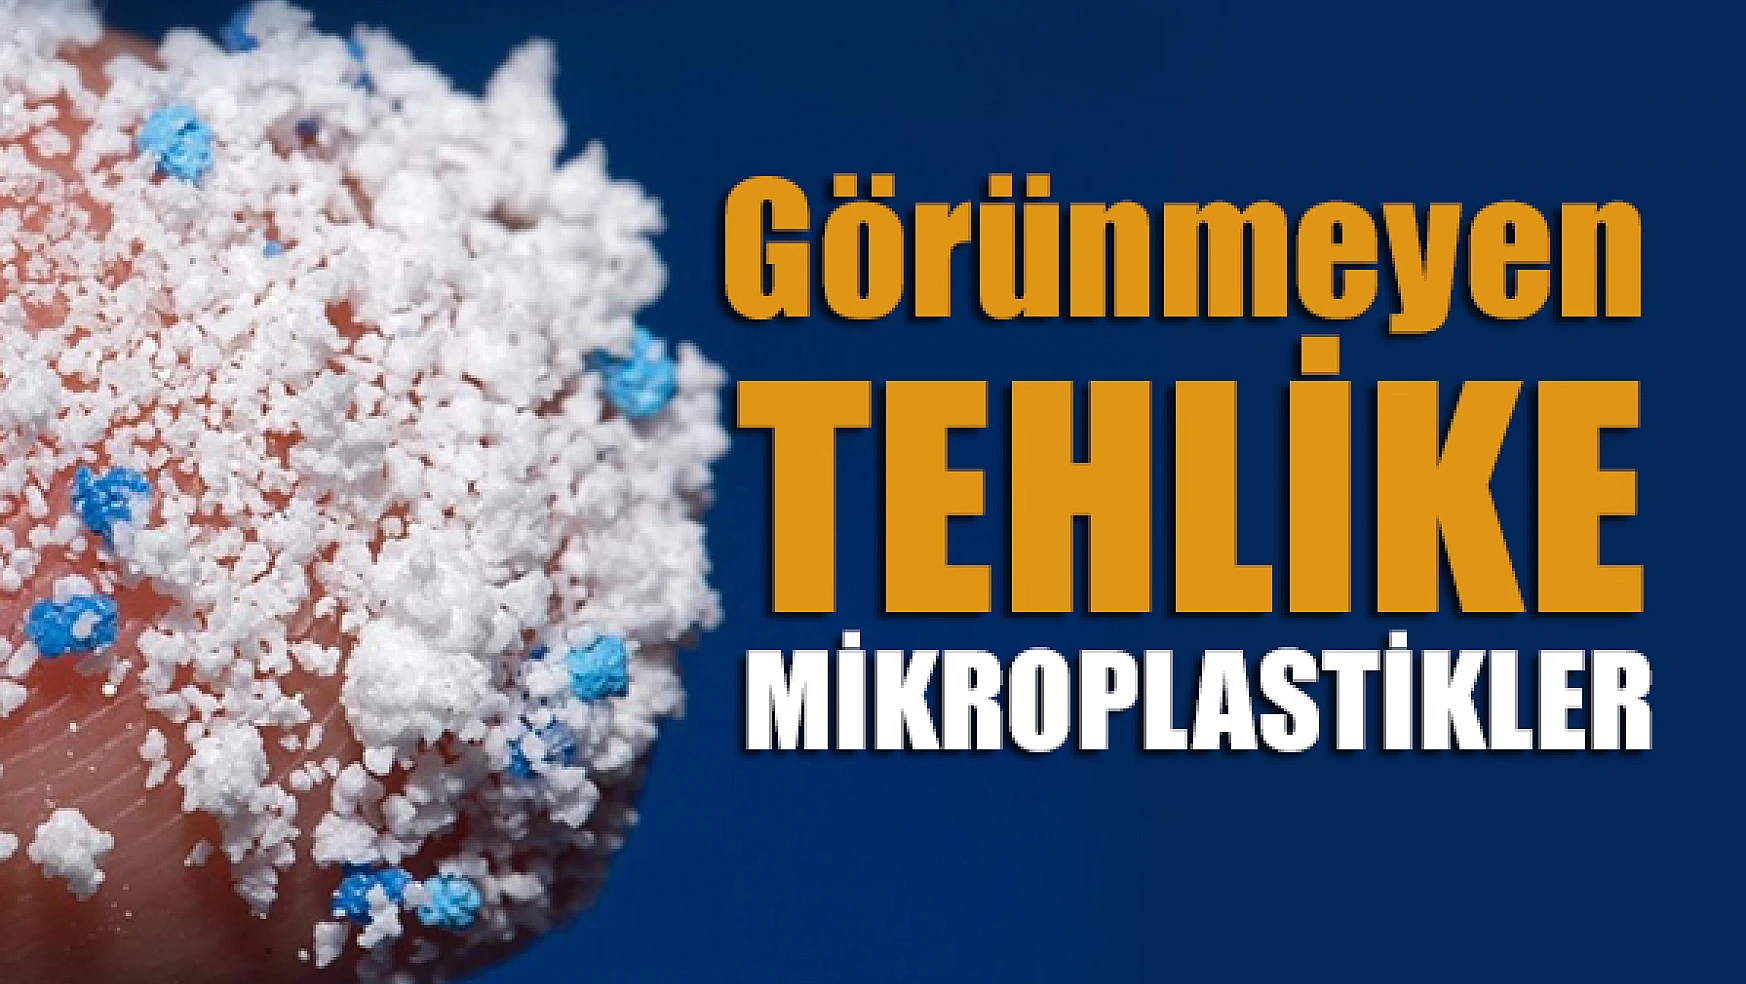 Görünmeyen tehlike: Mikroplastikler